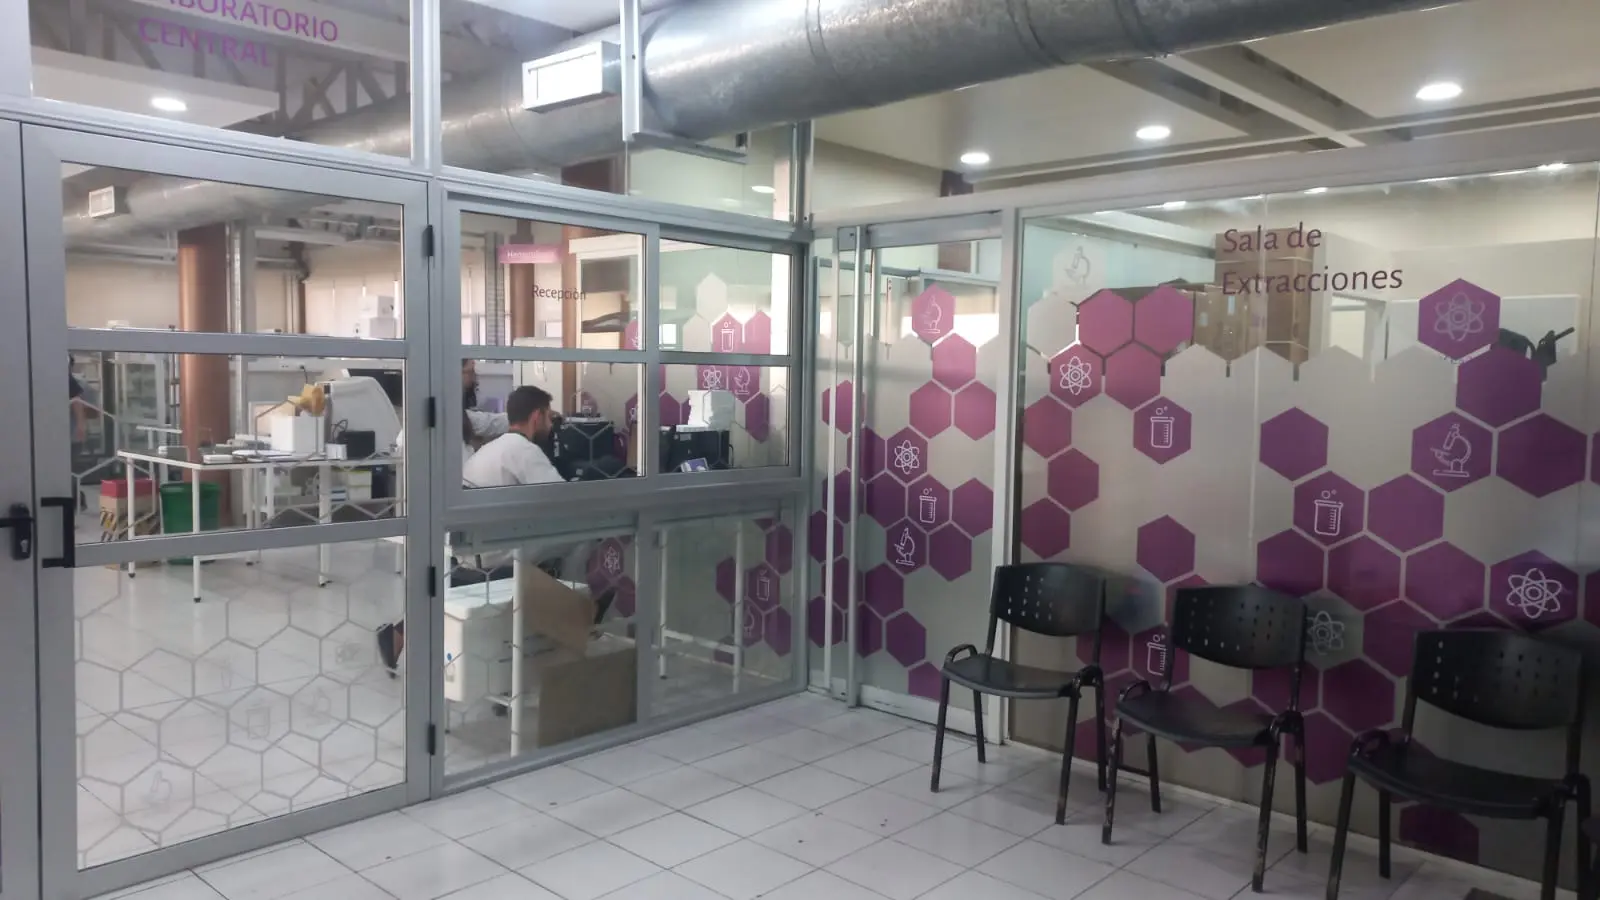 osep auditoria bioquimica - Cuántos empleados tiene OSEP en Mendoza